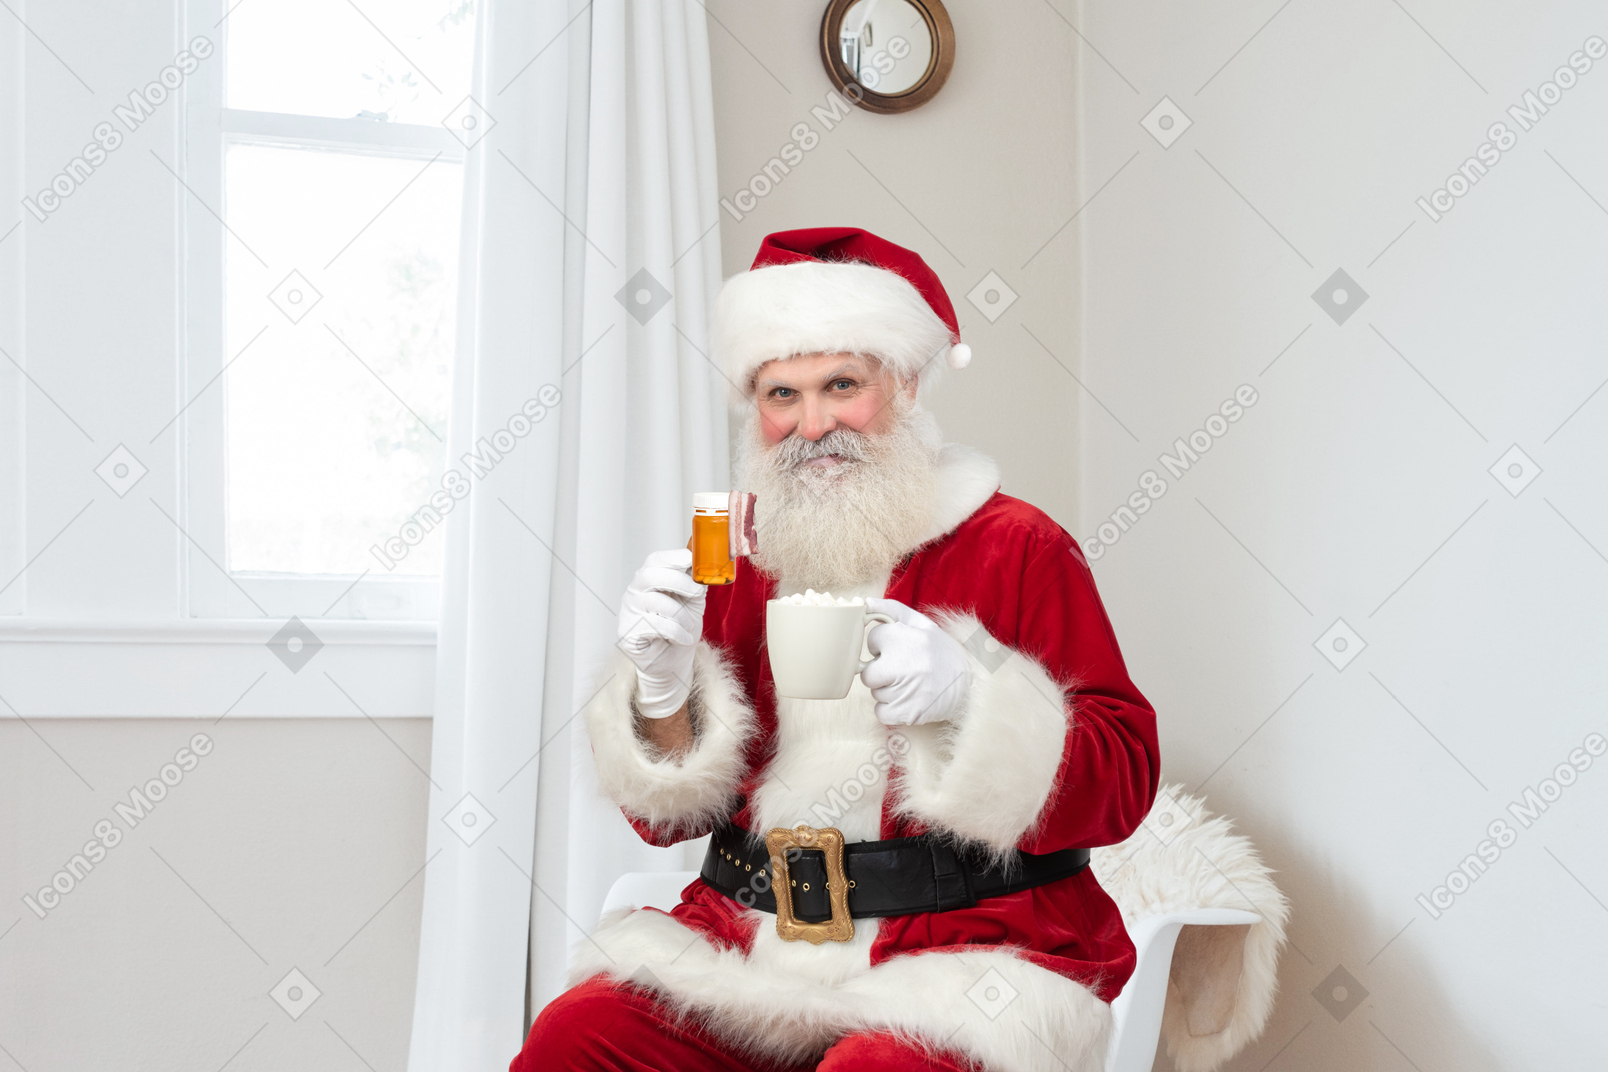 Санта клаус рекомендует оставаться здоровым и пить чай